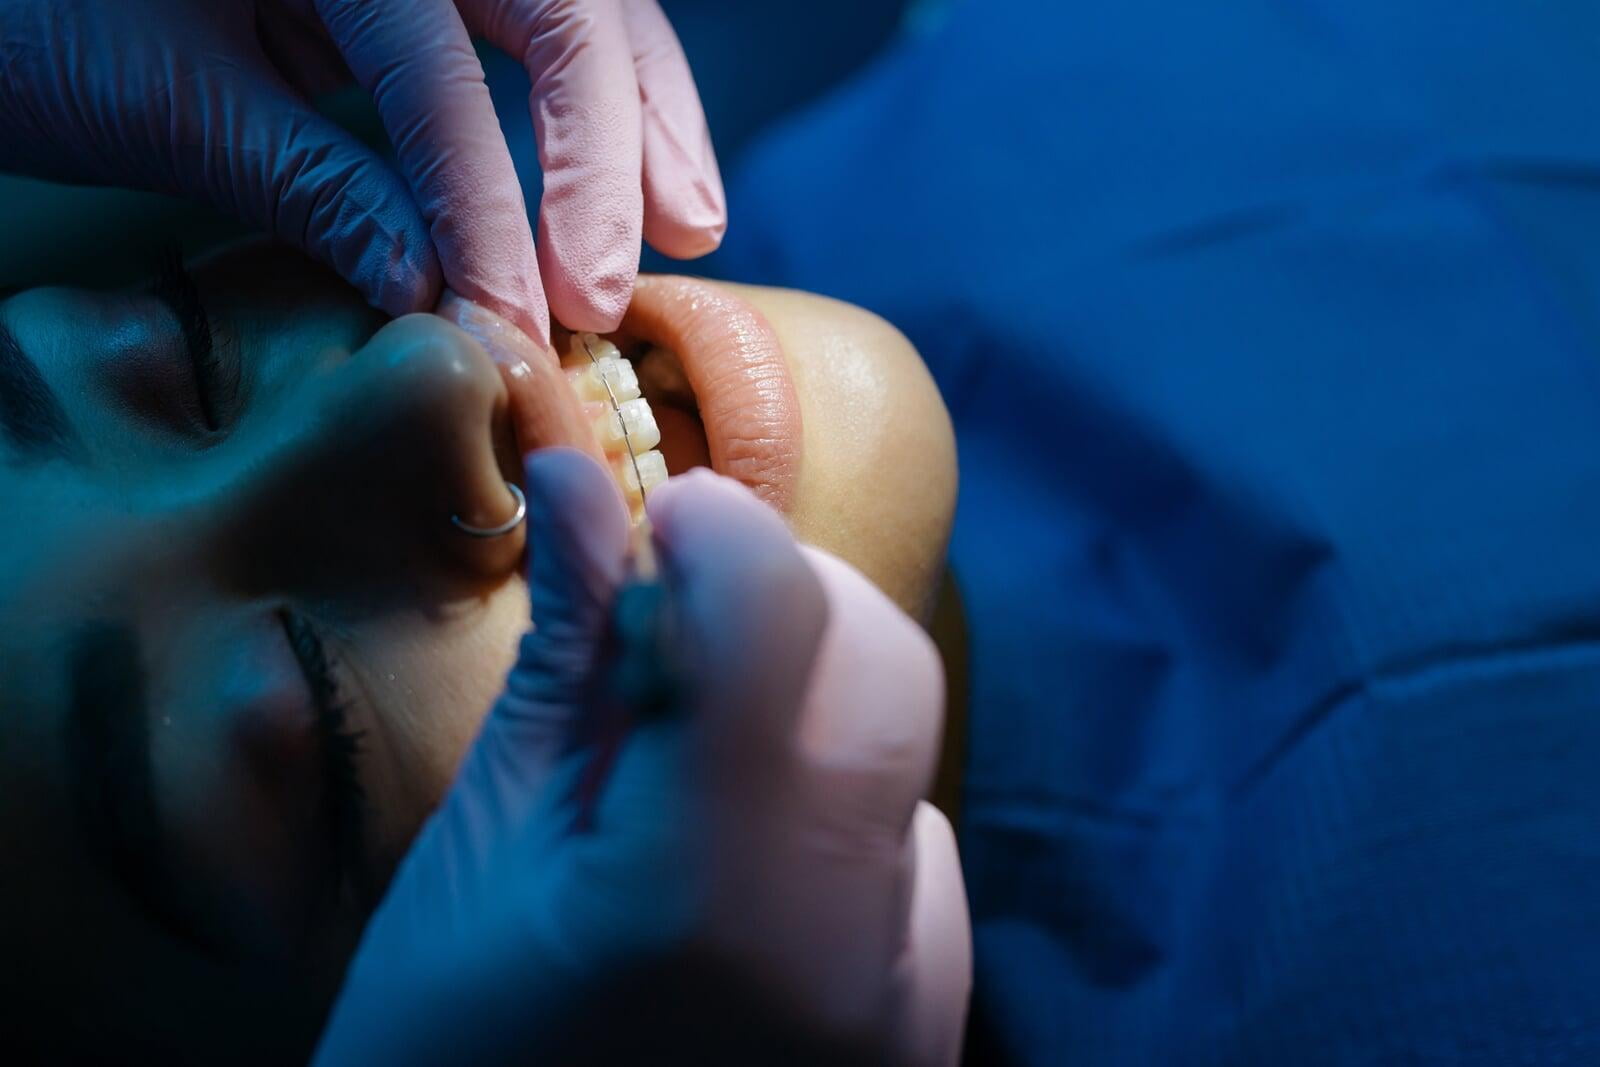 Los instrumentos necesarios para el doblaje de alambre en ortodoncia y ortopedia craneofacial, así como sus características, manejo y aplicaciones